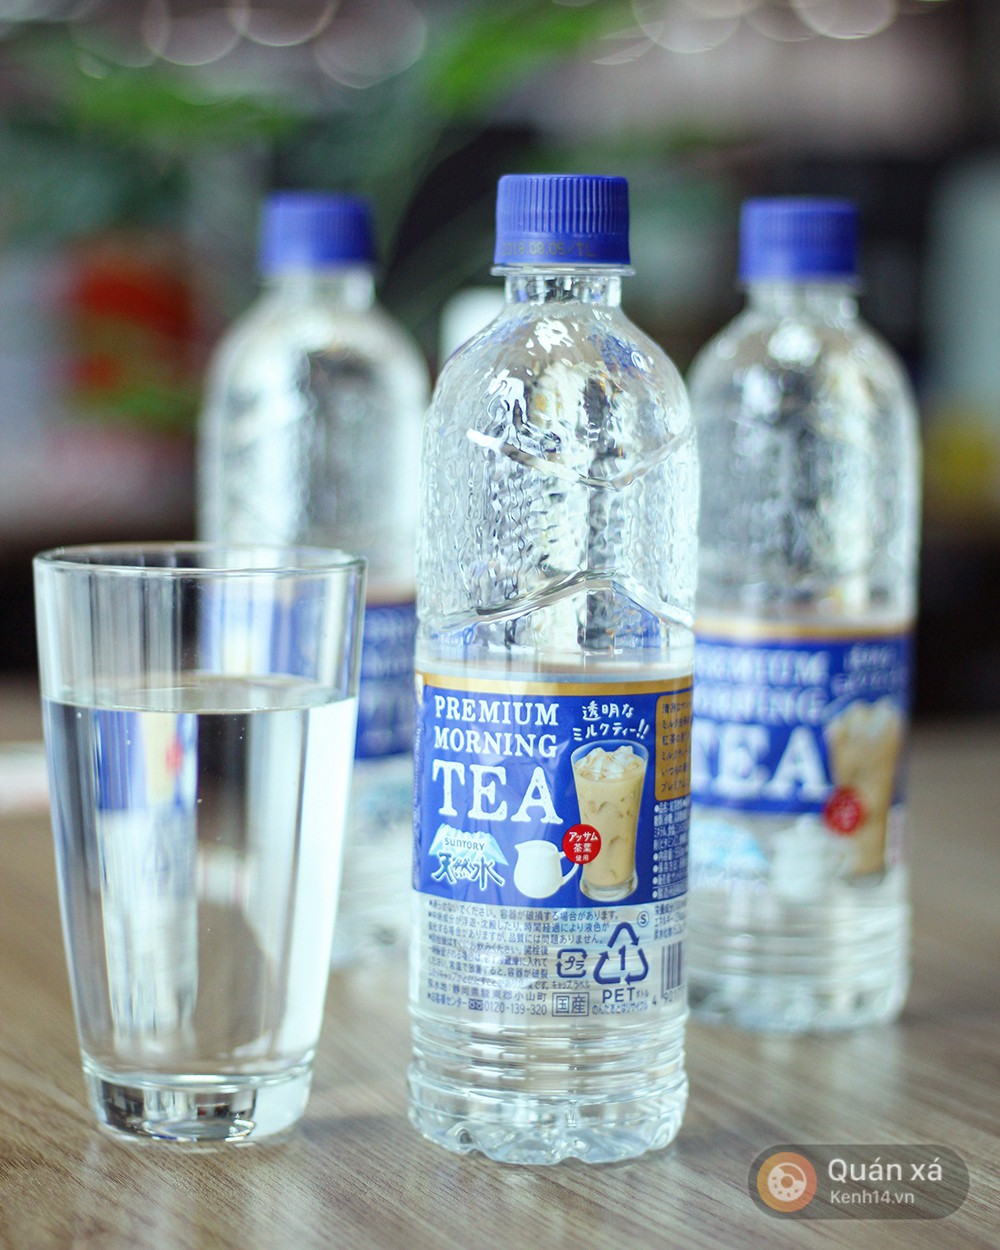 3 loại nước lọc nhưng mang hương vị độc lạ: hết trà sữa lại đến coca - Ảnh 4.